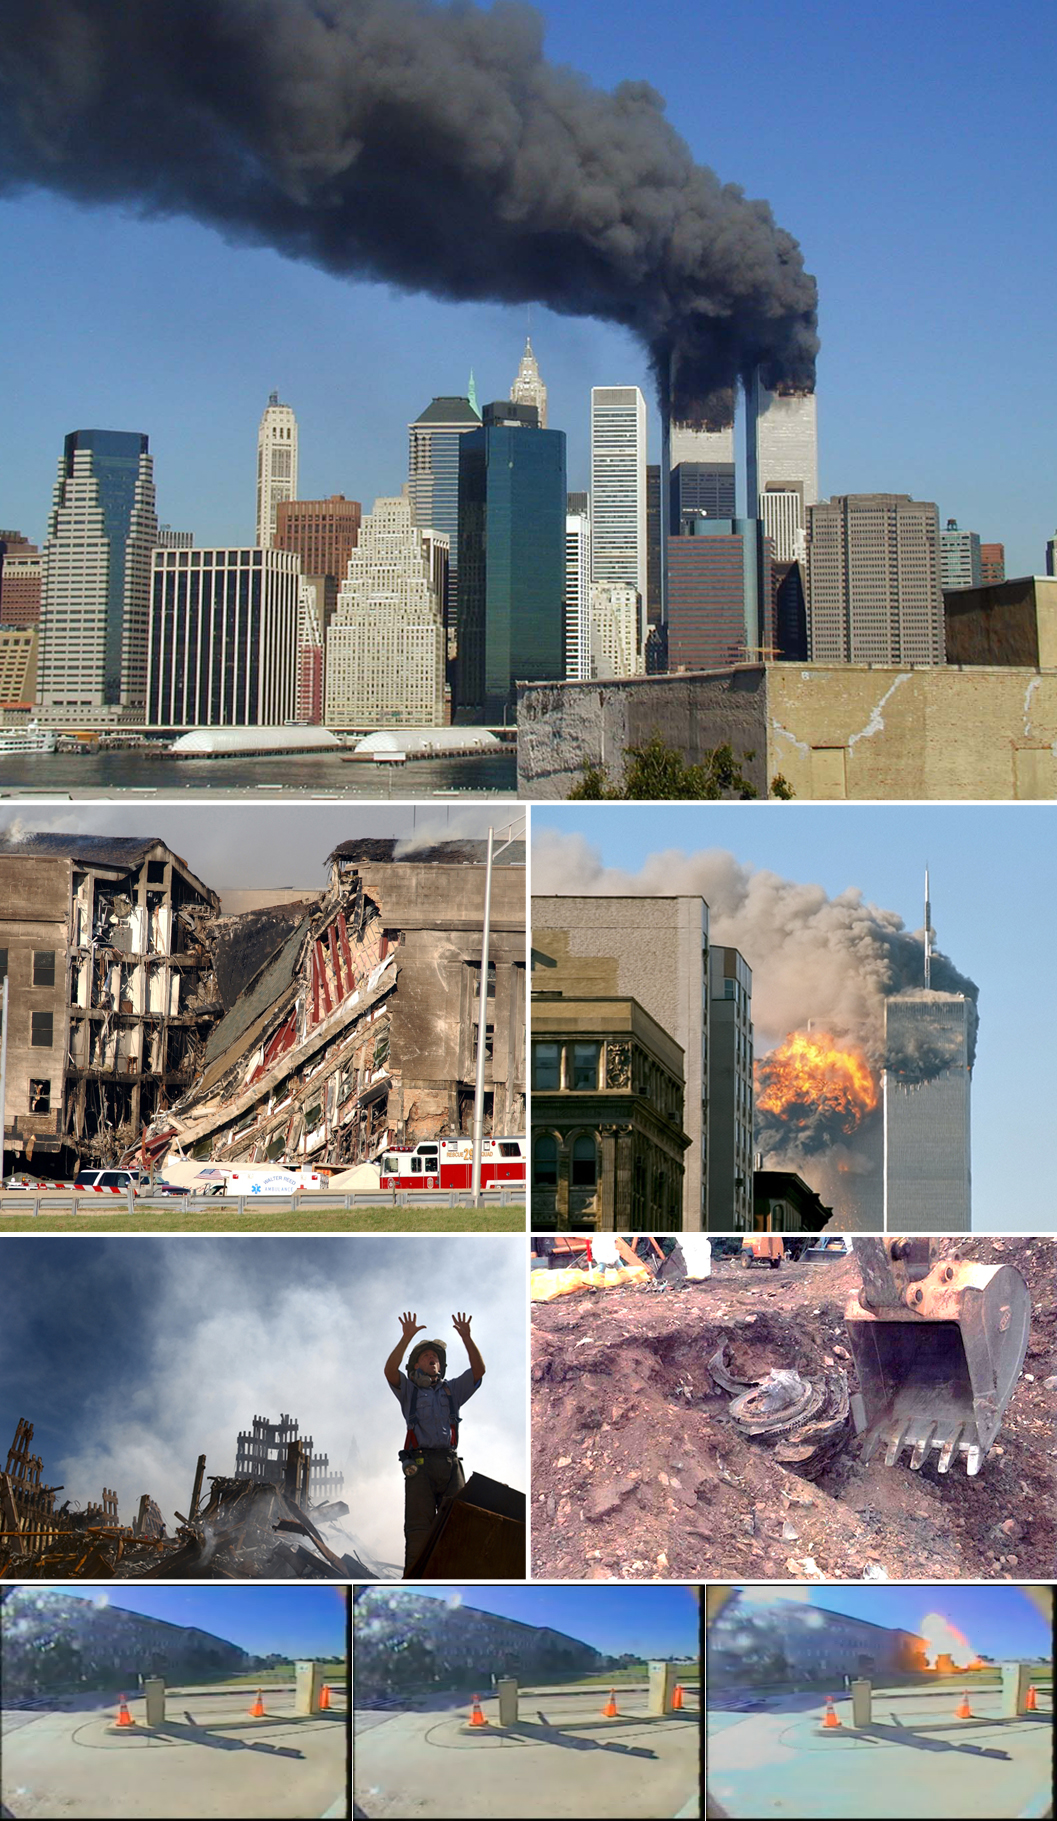 11 septembre Montage photo avec des photos des tours jumelles juste après que des avions ont heurté d'autres lieux, démoli d'autres lieux, donné des directives par le premier intervenant et creusant des pelles dans le cadre de la démolition